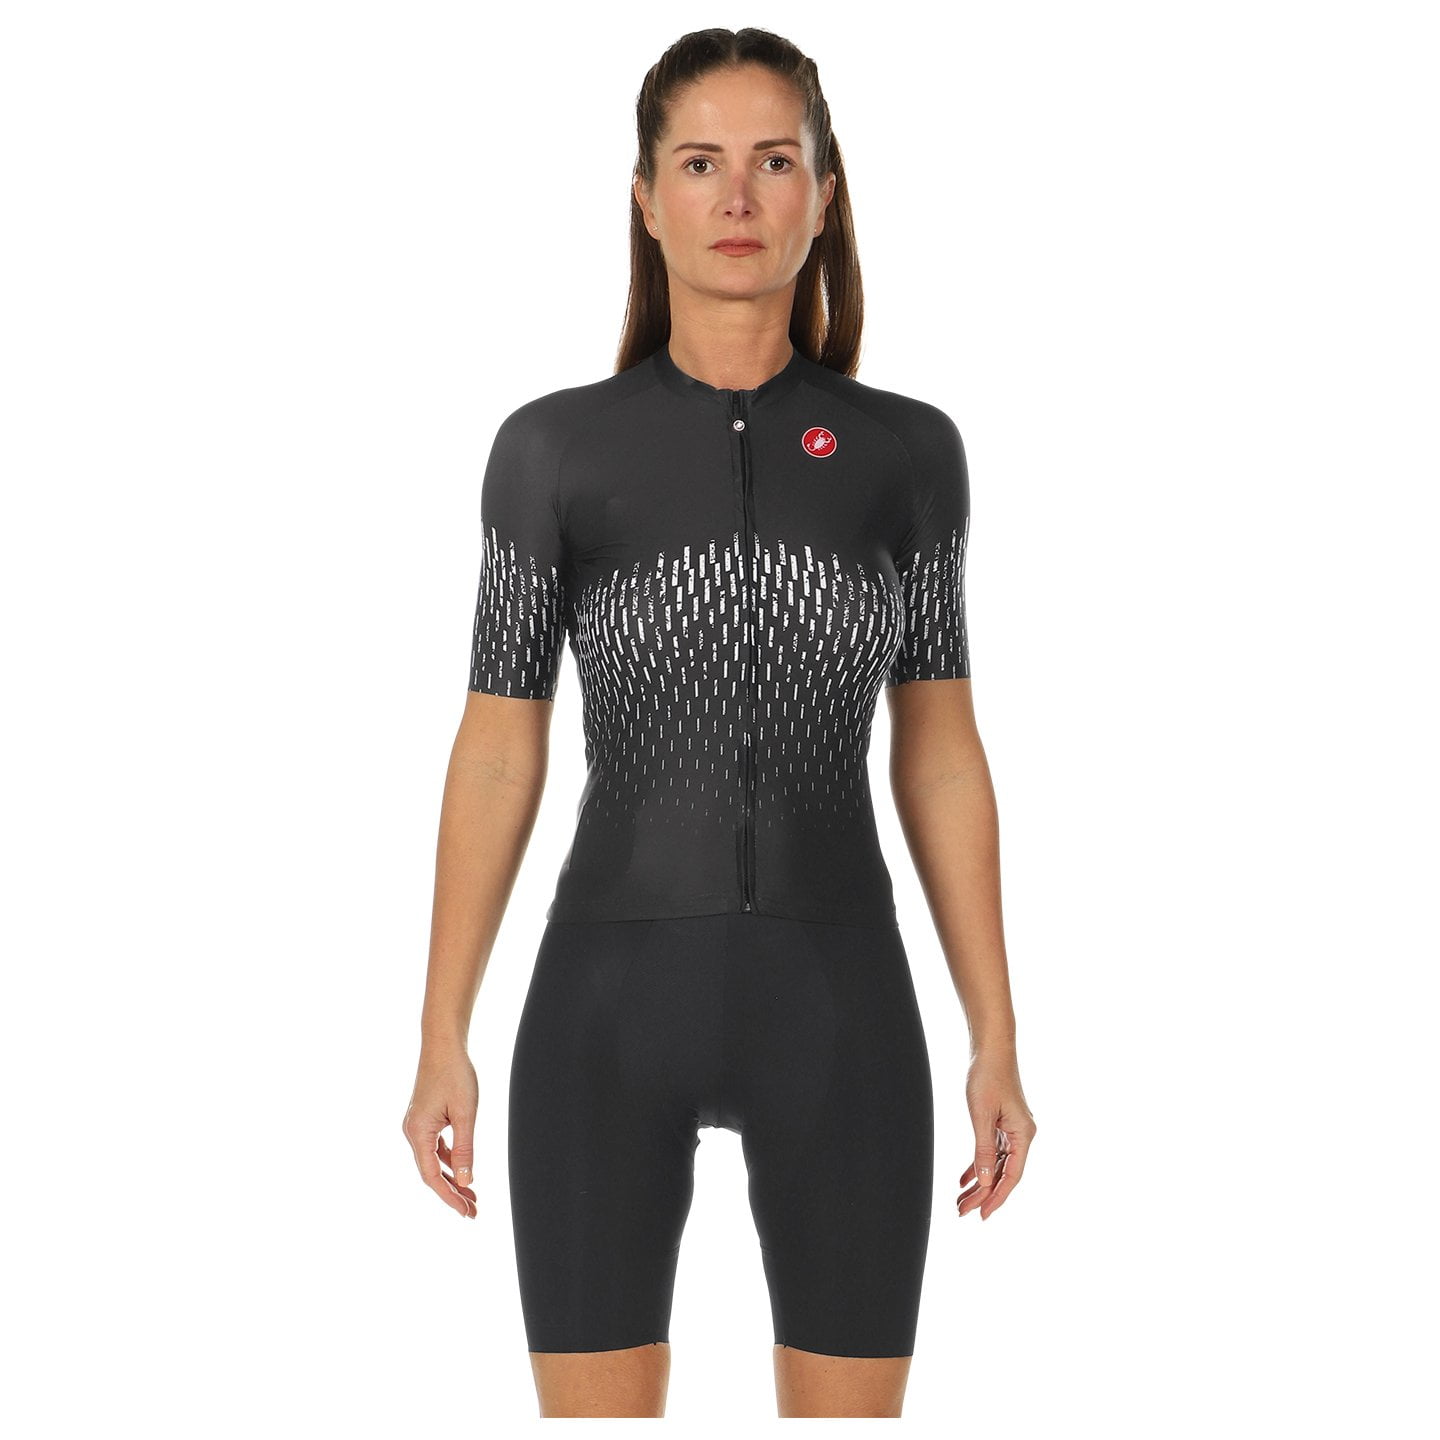 CASTELLI Aero Pro Women’s Set (cycling jersey + cycling shorts) Women’s Set (2 pieces), Cycling clothing